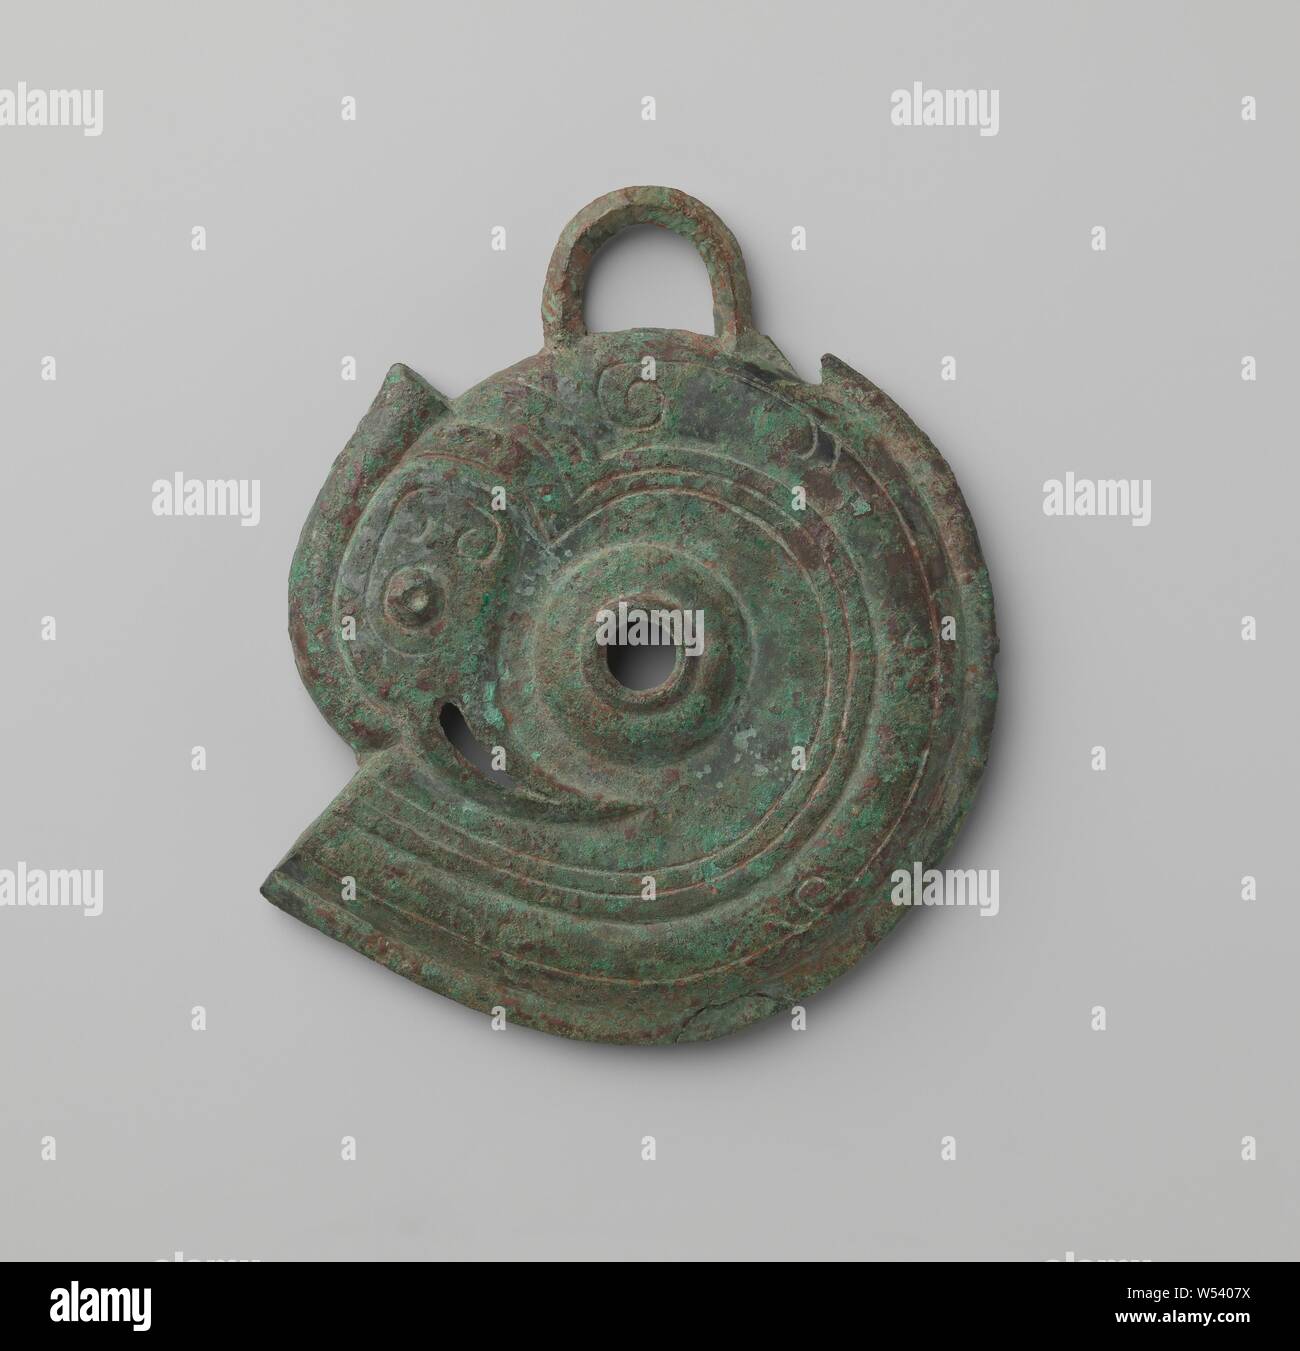 Fragment d'un peu de chevaux, Horse bit dans la forme d'un oiseau stylisé., anonyme, de la Chine, -1100 - -800, Zhou-dynastie (1050 av. J.-C.-221 av. J.-C.), bronze (metal), d 10,3 cm × d 1.3 cm Banque D'Images